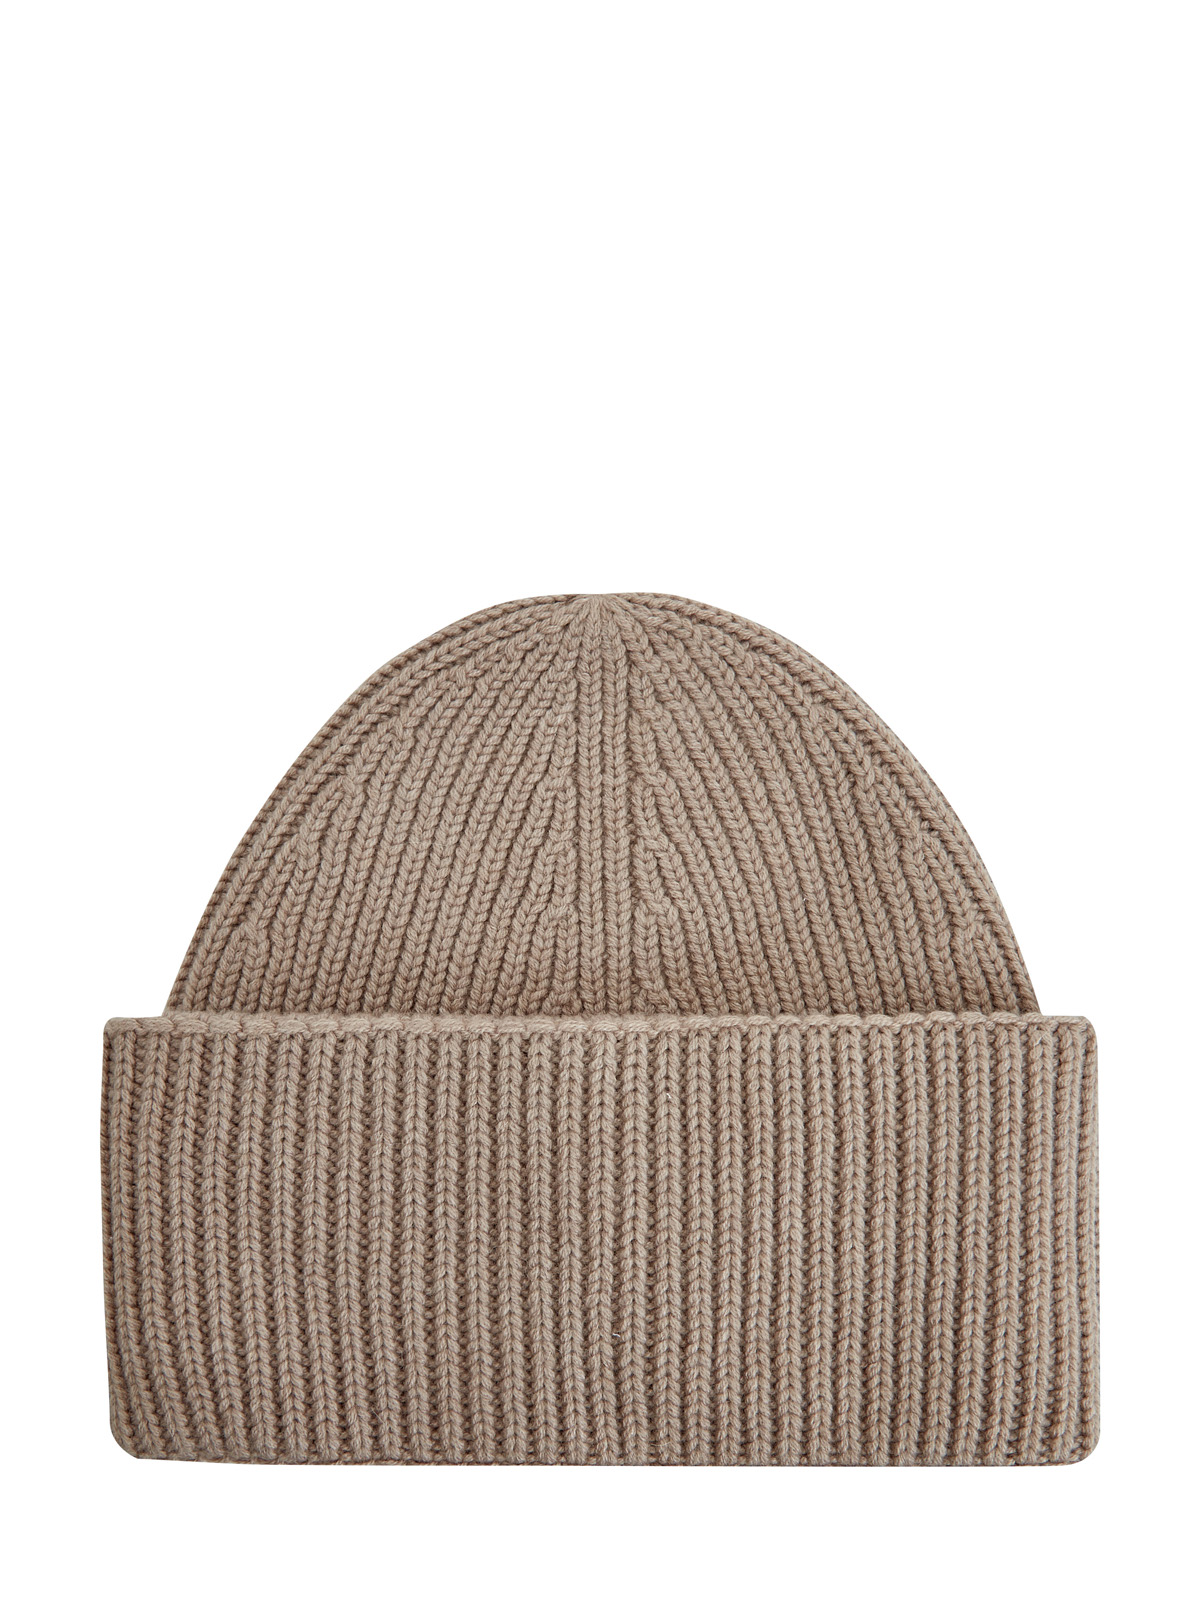 Теплая шапка из шерсти, шелка и кашемира FABIANA FILIPPI, цвет коричневый, размер 37;37.5;38;38.5;40 - фото 1